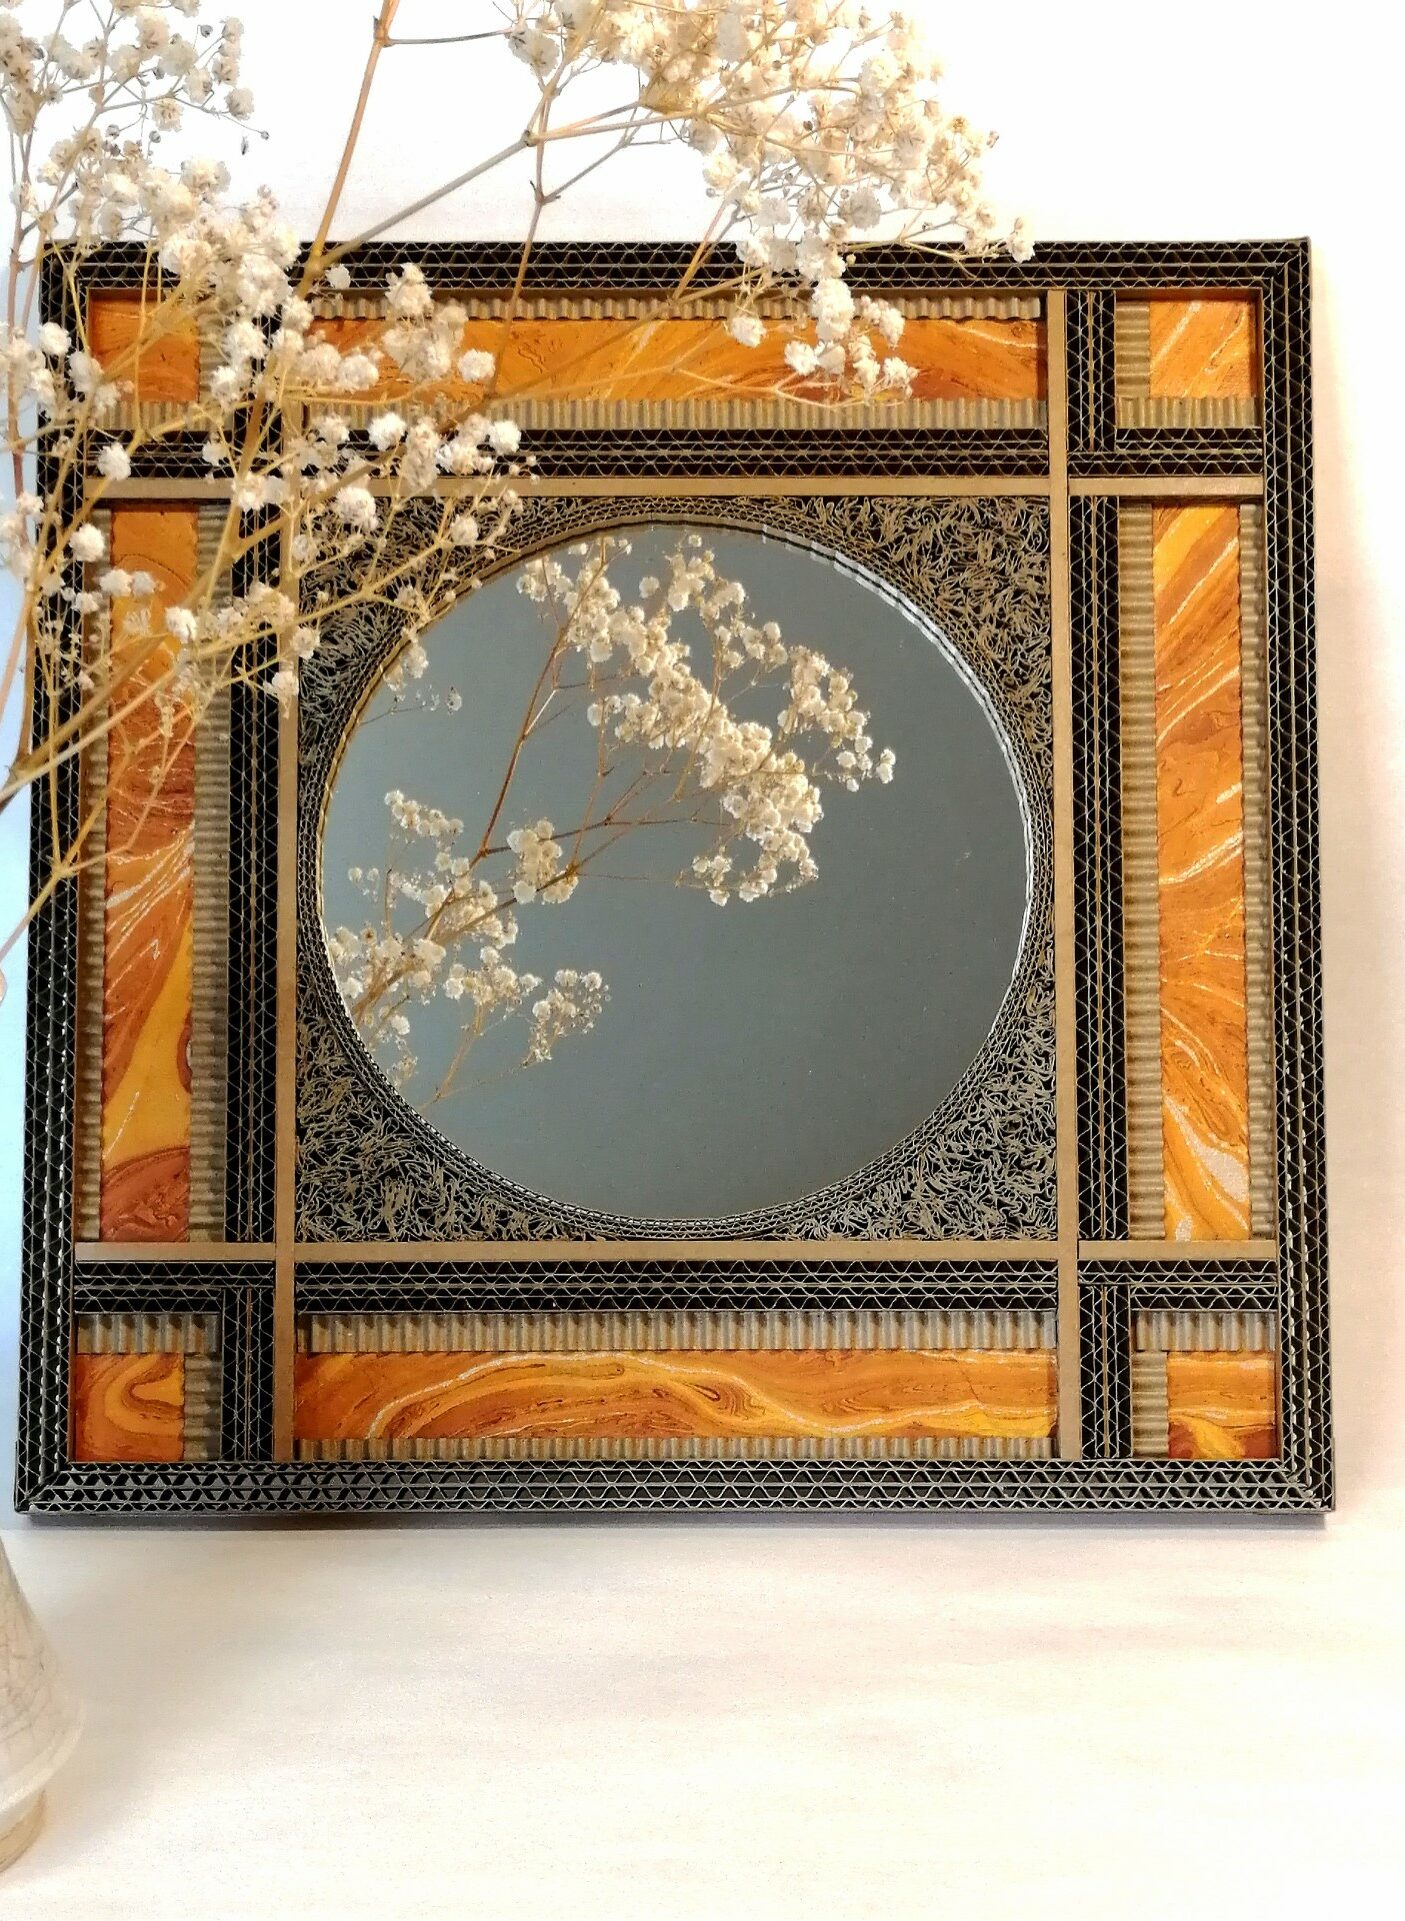 JEMA 2024-autour du carton-miroir orange : miroir rond encadré par une décoration de dentelle de carton et de papier marbré orange.